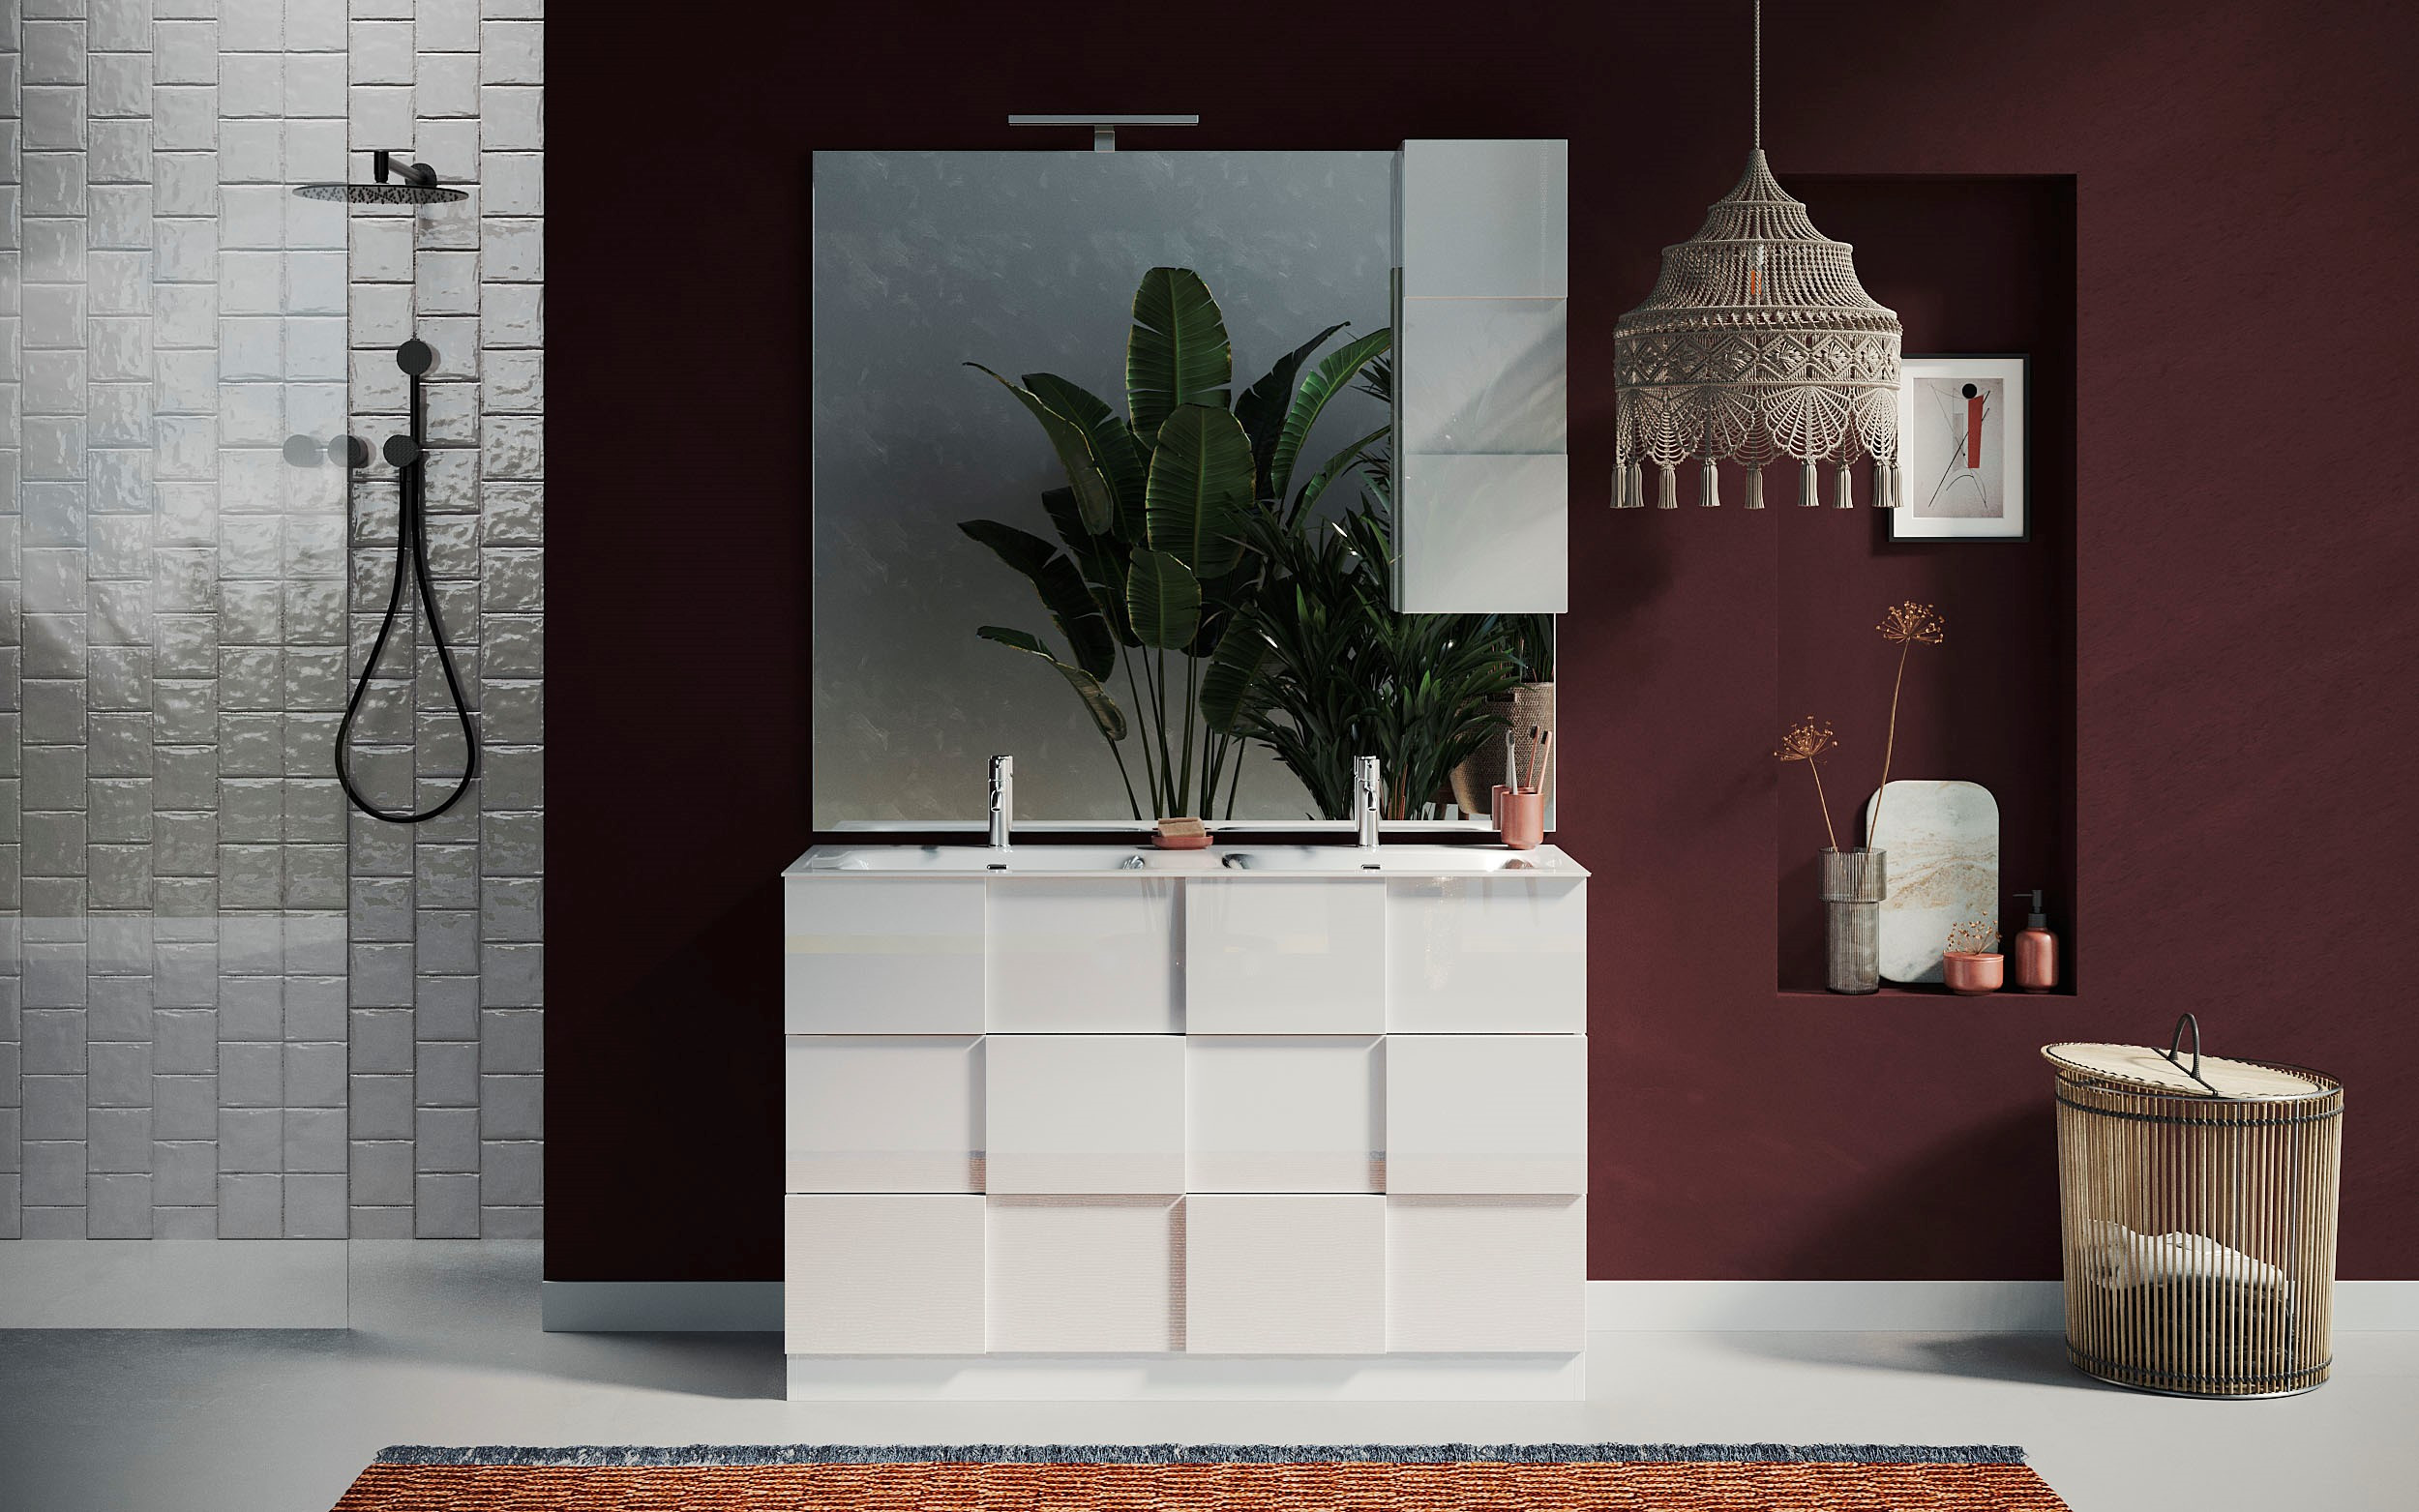 Ensemble salle de bain DAMA, meuble+2 colonnes+miroir+vasque BASIC